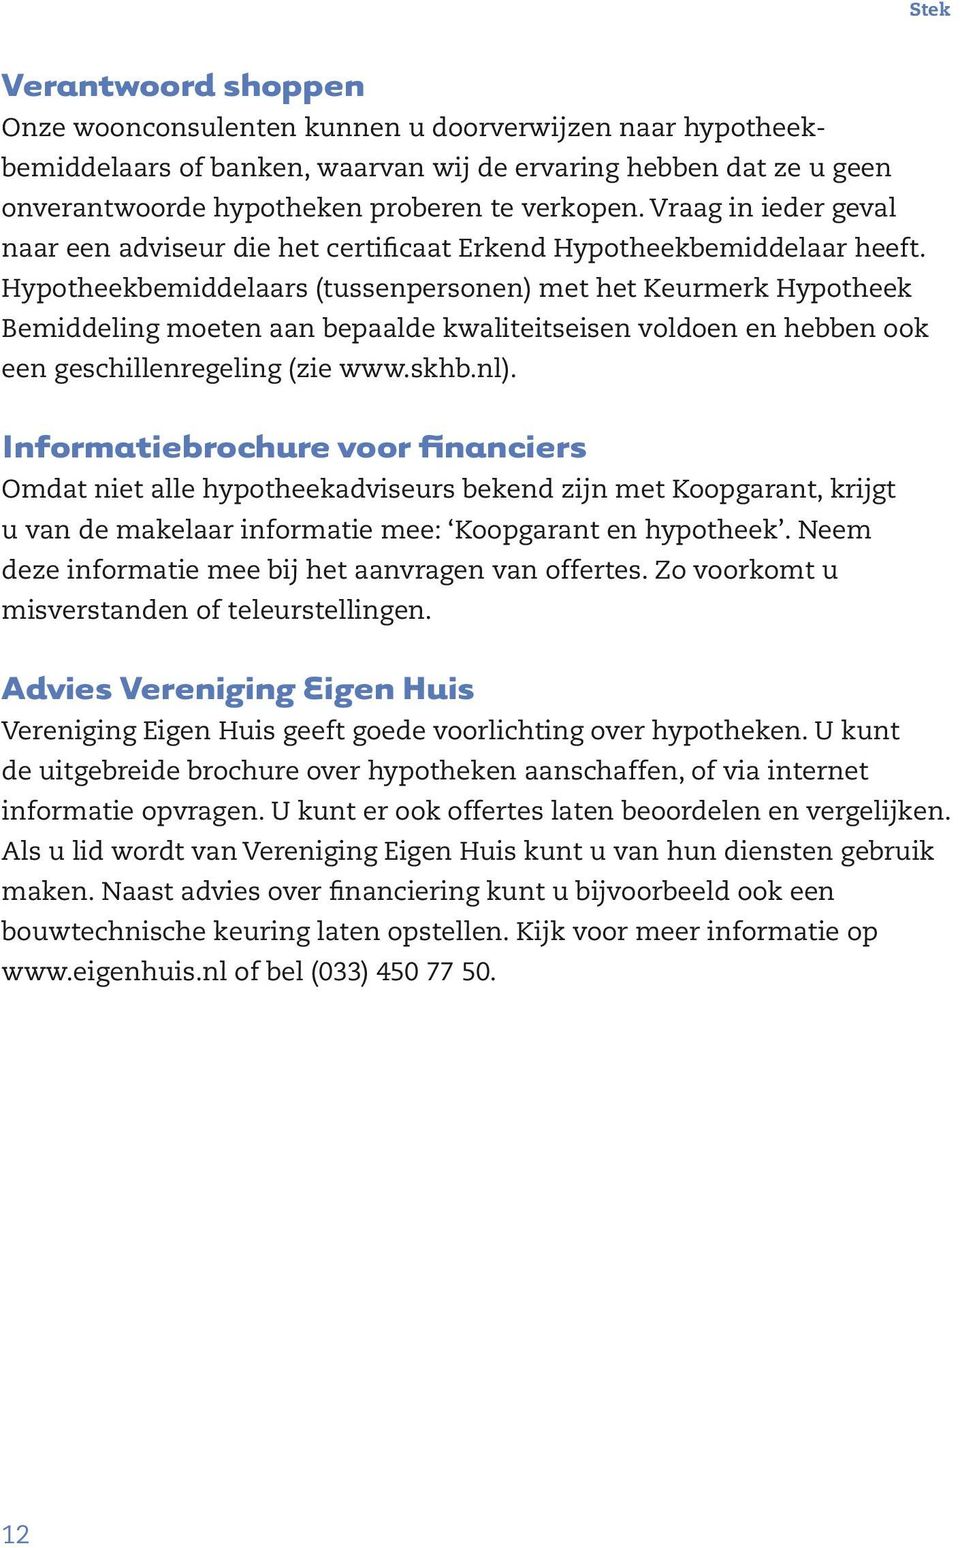 Hypotheekbemiddelaars (tussenpersonen) met het Keurmerk Hypotheek Bemiddeling moeten aan bepaalde kwaliteitseisen voldoen en hebben ook een geschillenregeling (zie www.skhb.nl).